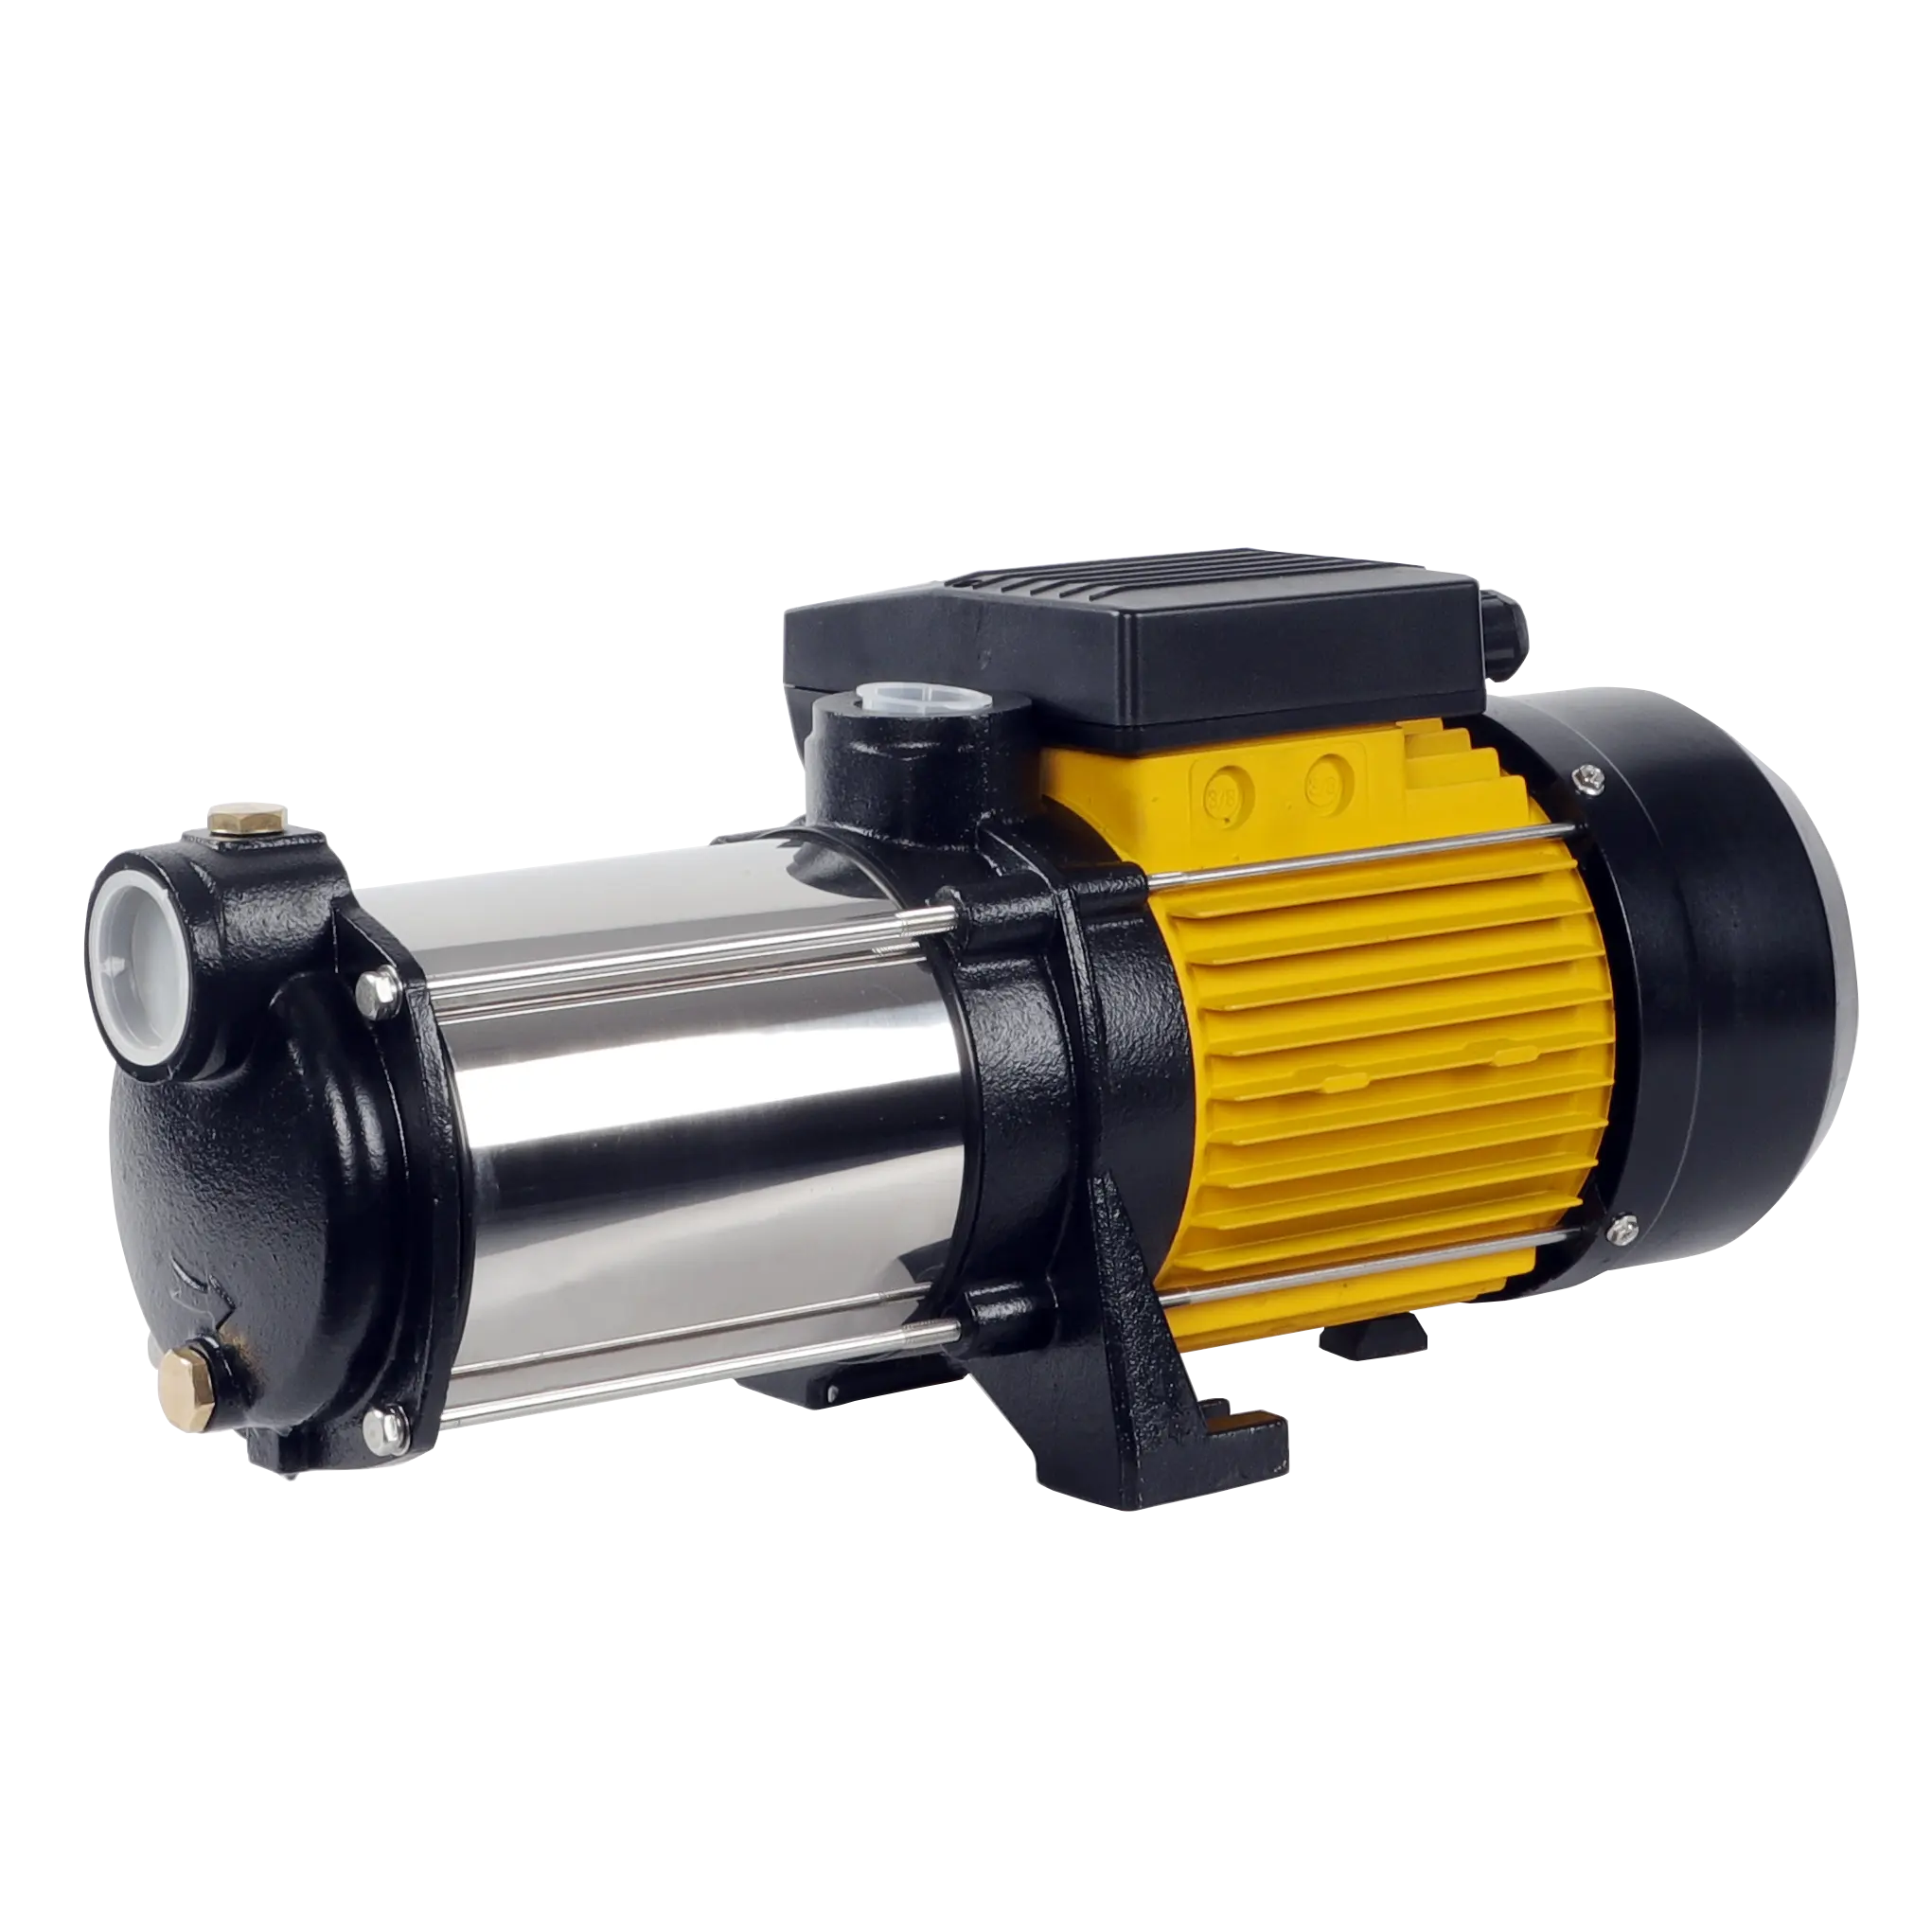 HpCentrifugal-bomba de agua eléctrica Vertical multietapa, 2,8 HP, 6 pulgadas, potenciador de presión doméstica